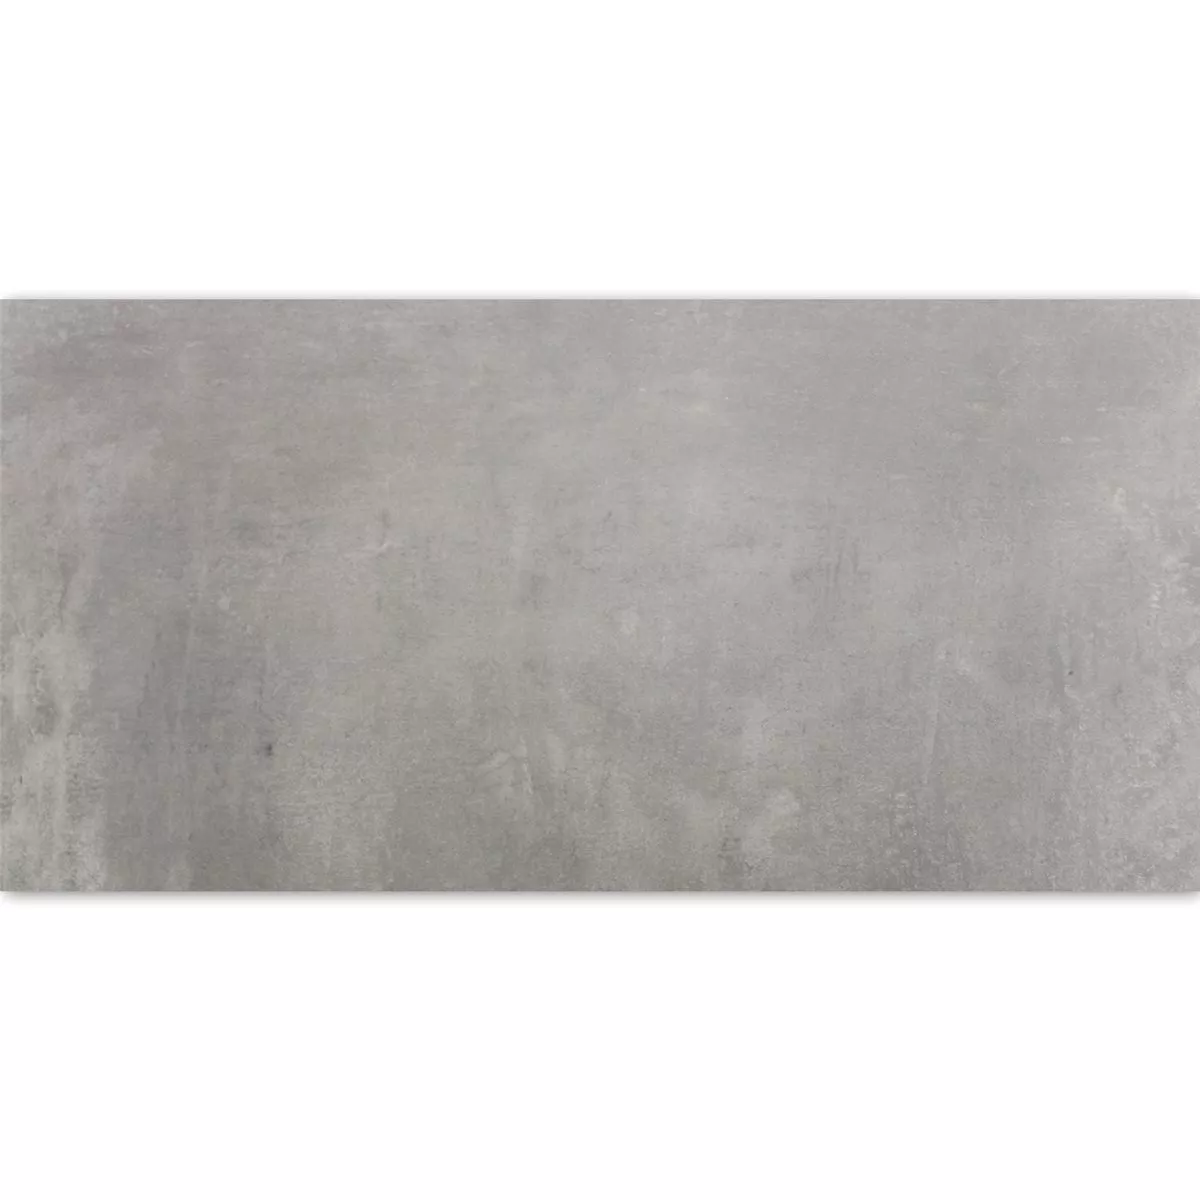 Πλακάκια Δαπέδου Etna Ανοιχτό Γκρι Γυαλισμένο 30x60cm